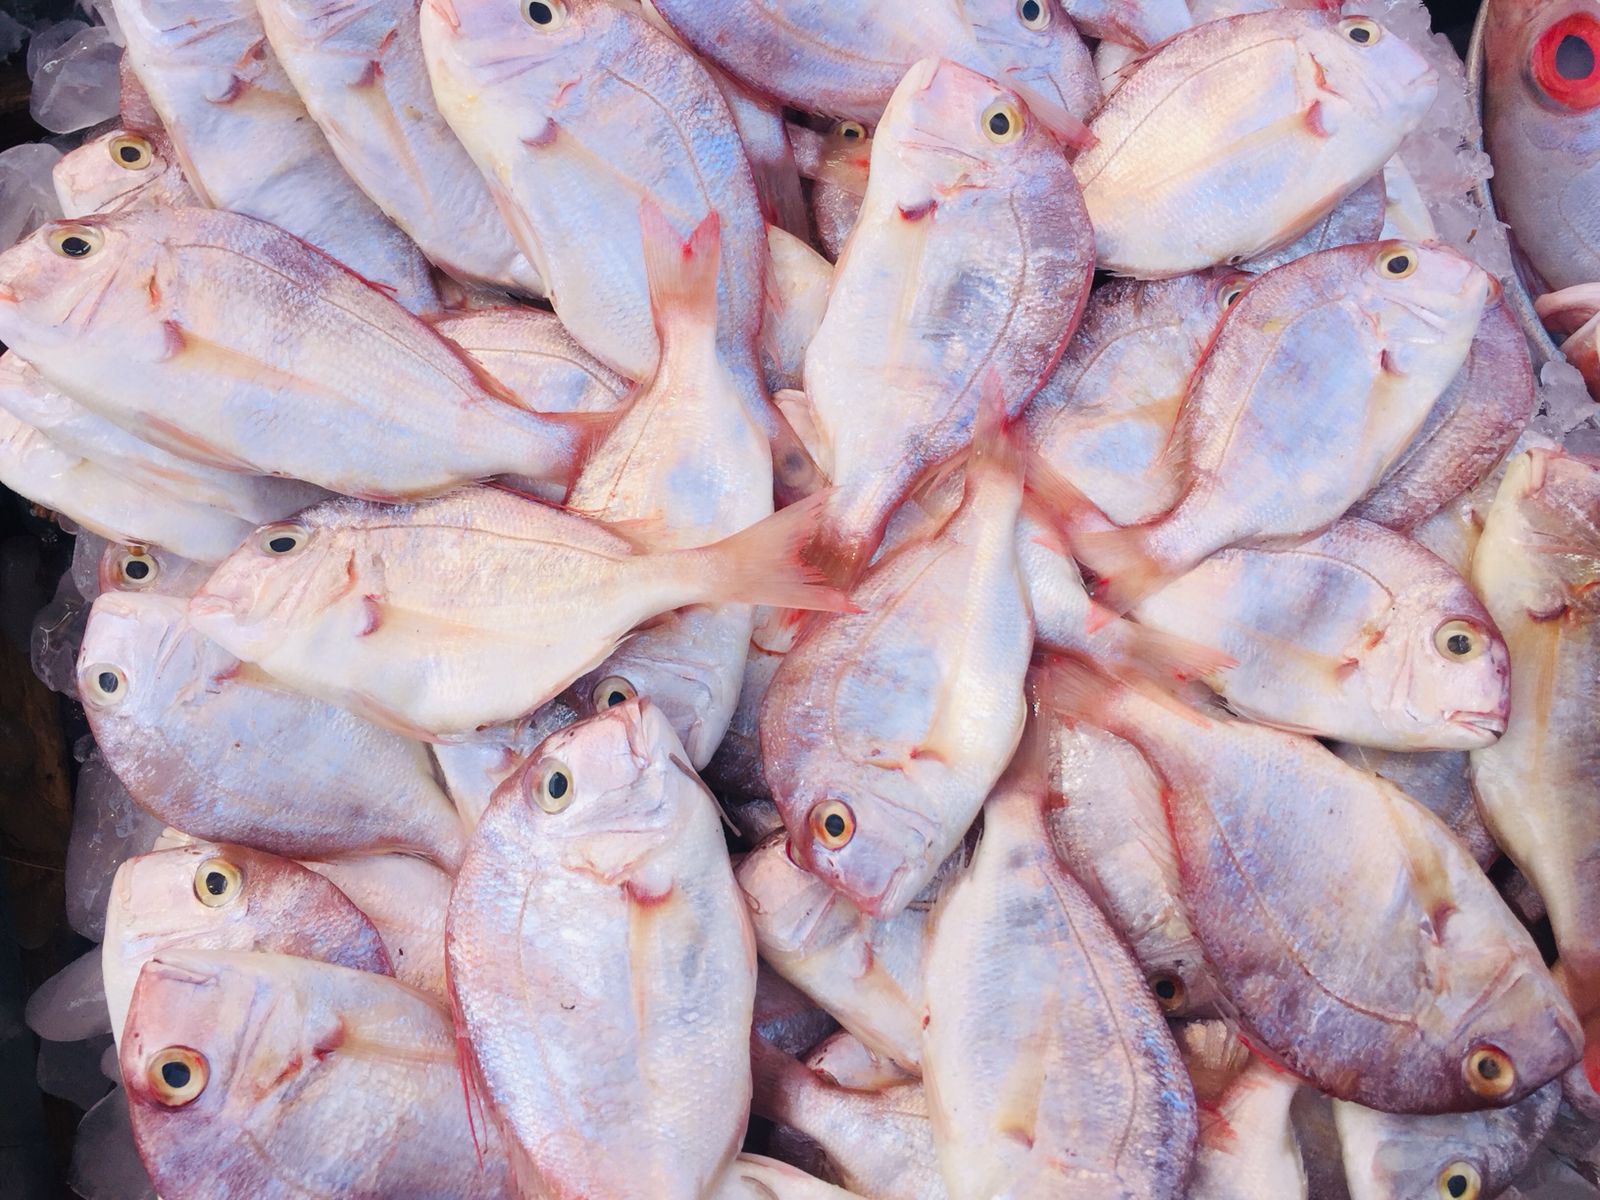 سوق الأنصارى للأسماك بمحافظة السويس (6)